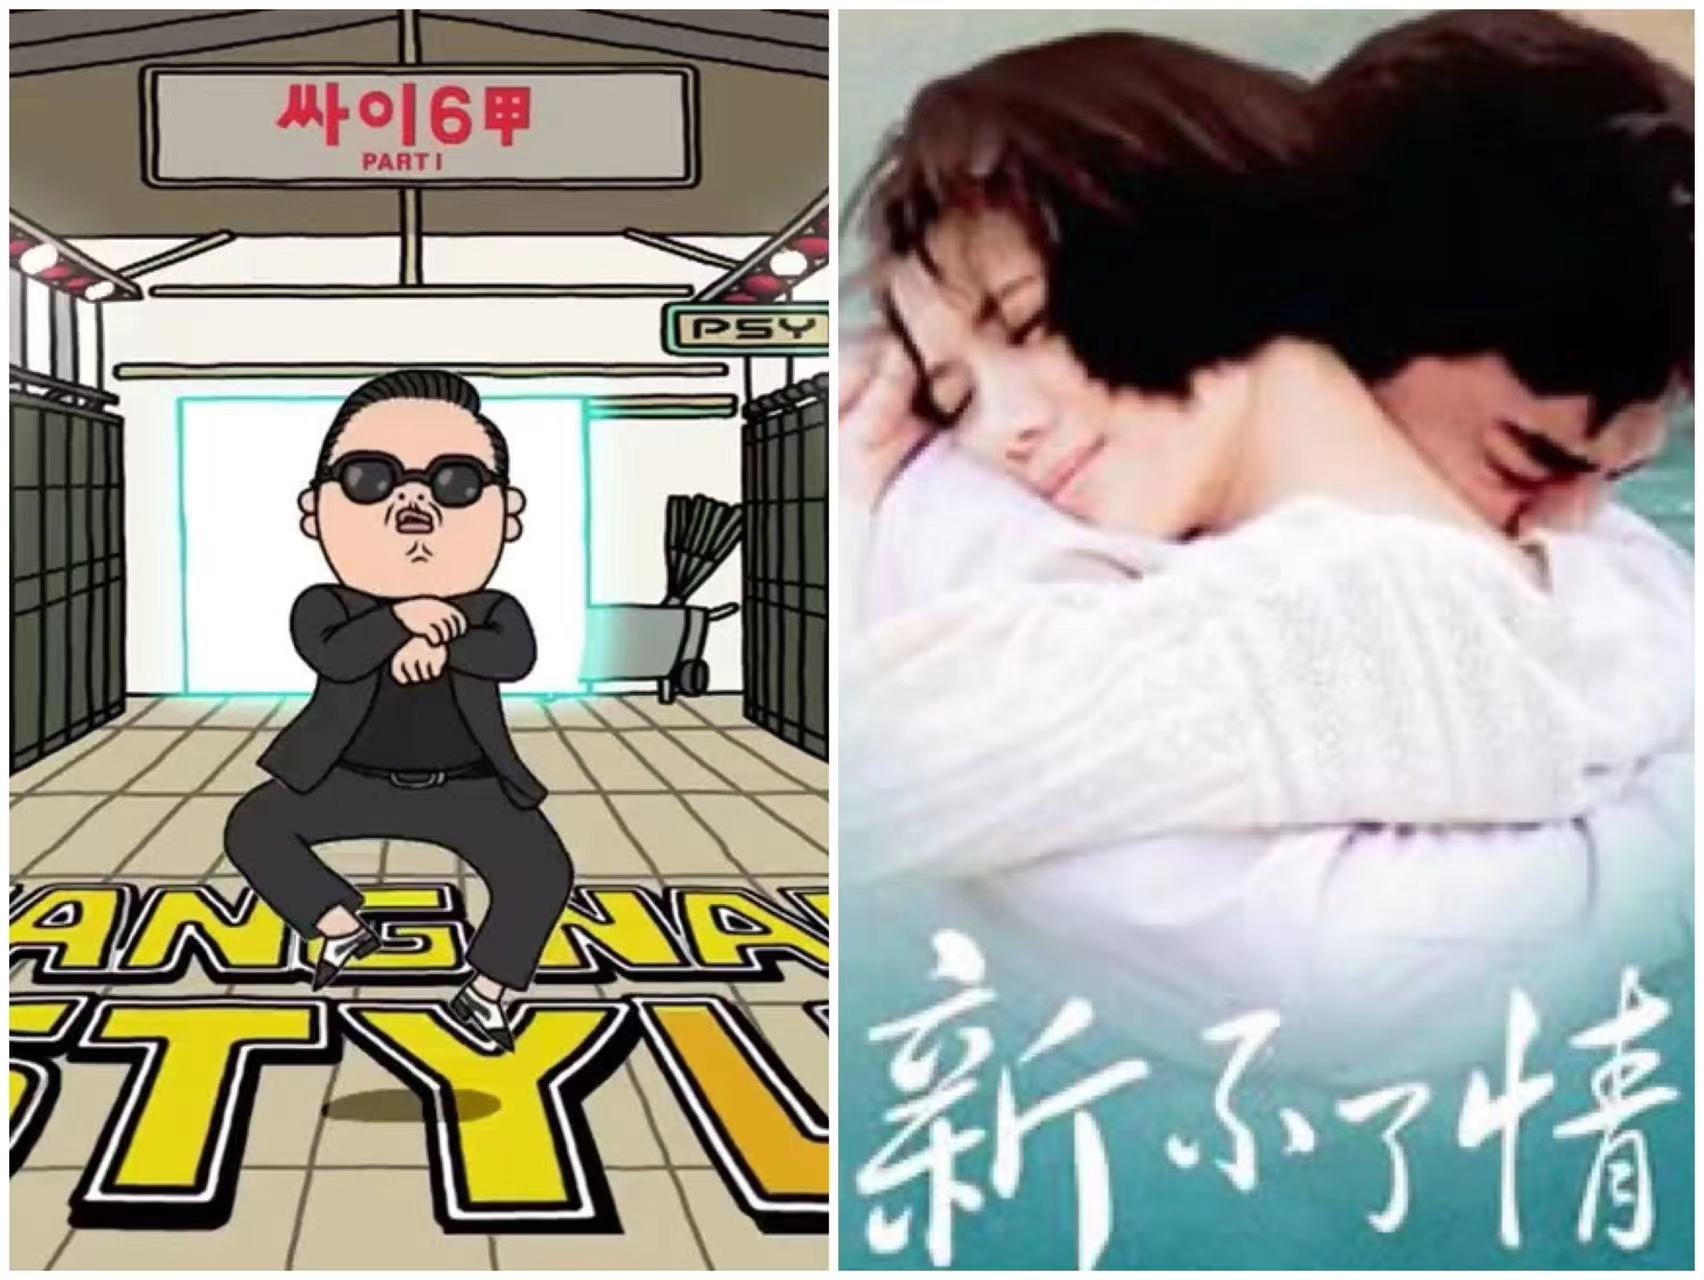 Kim YoungAh's go-to songs to sing at KTV: ‘Gangnam Style’ by PSY and 新不了情 [Xīn bùliǎo qíng] by 万芳 [Wàn Fāng].